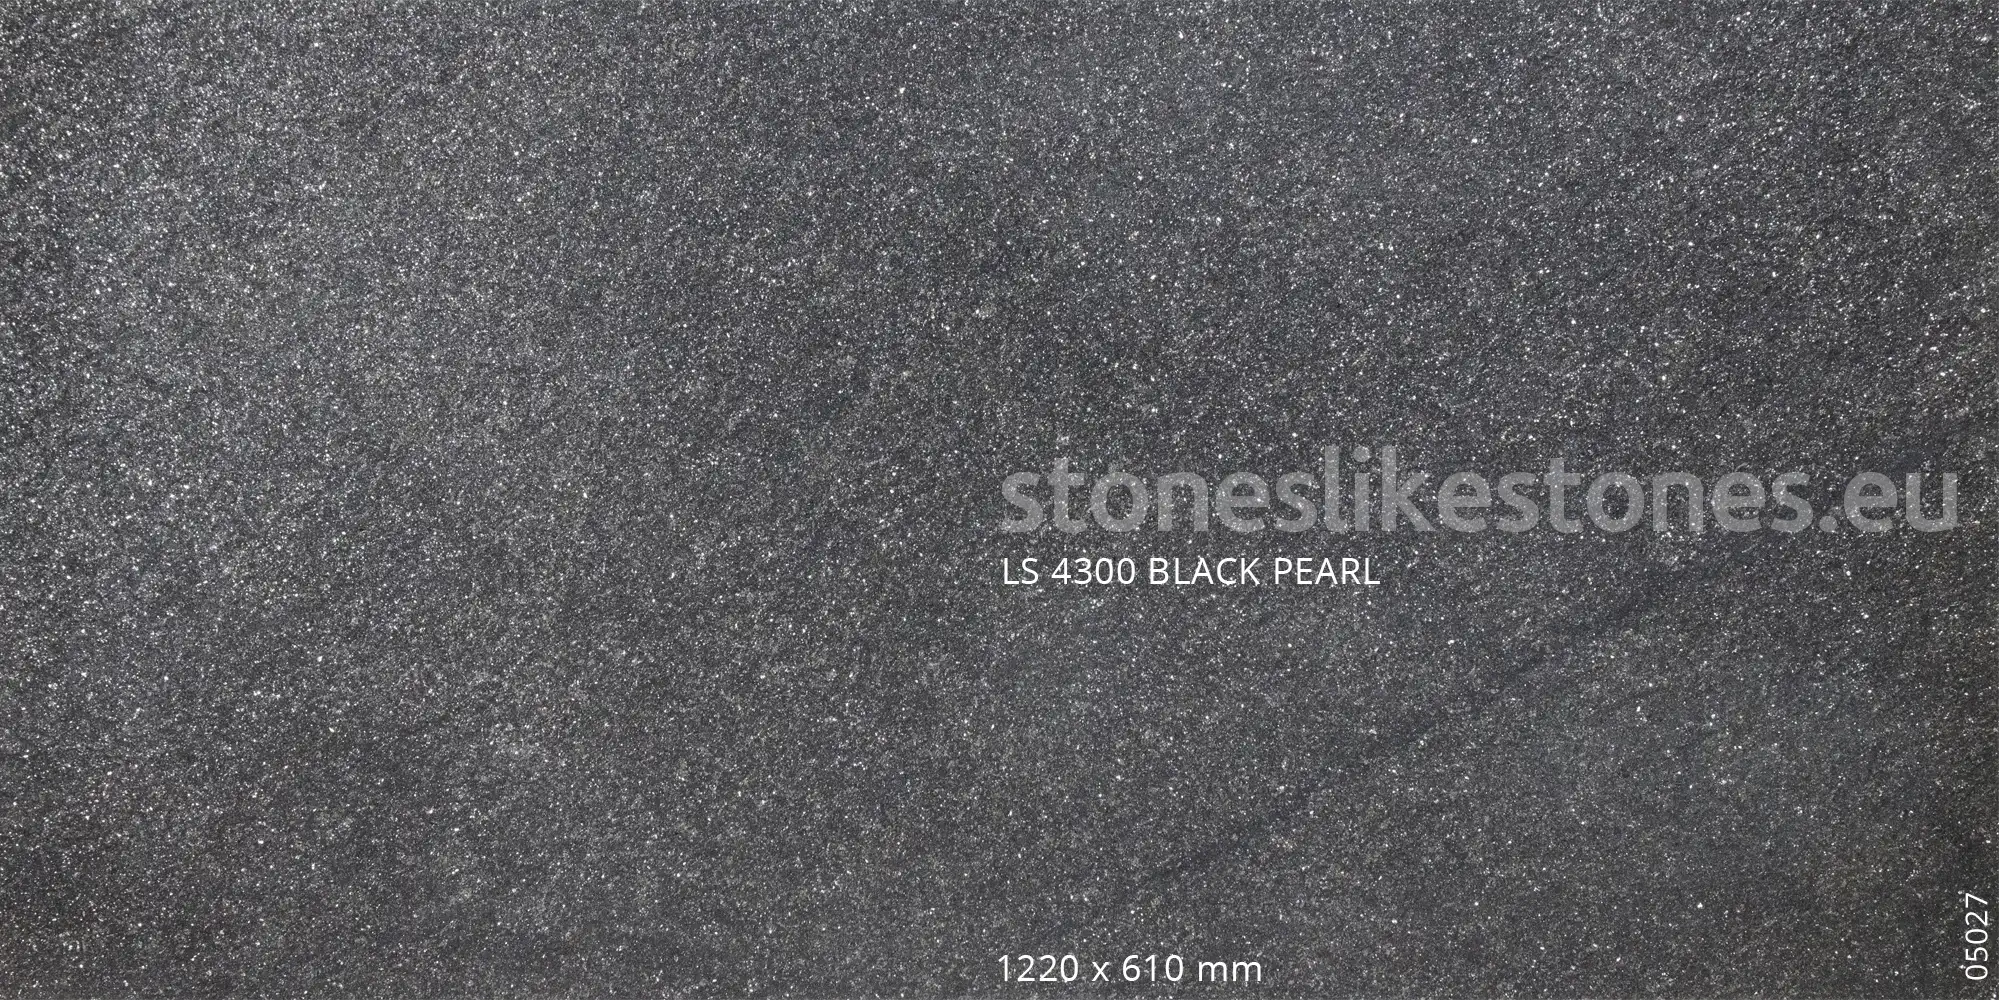 StoneslikeStones Dünnschiefer LS 4300 BLACK PEARL Sandstein – Abb 05027 – Download mit Rechtsklick